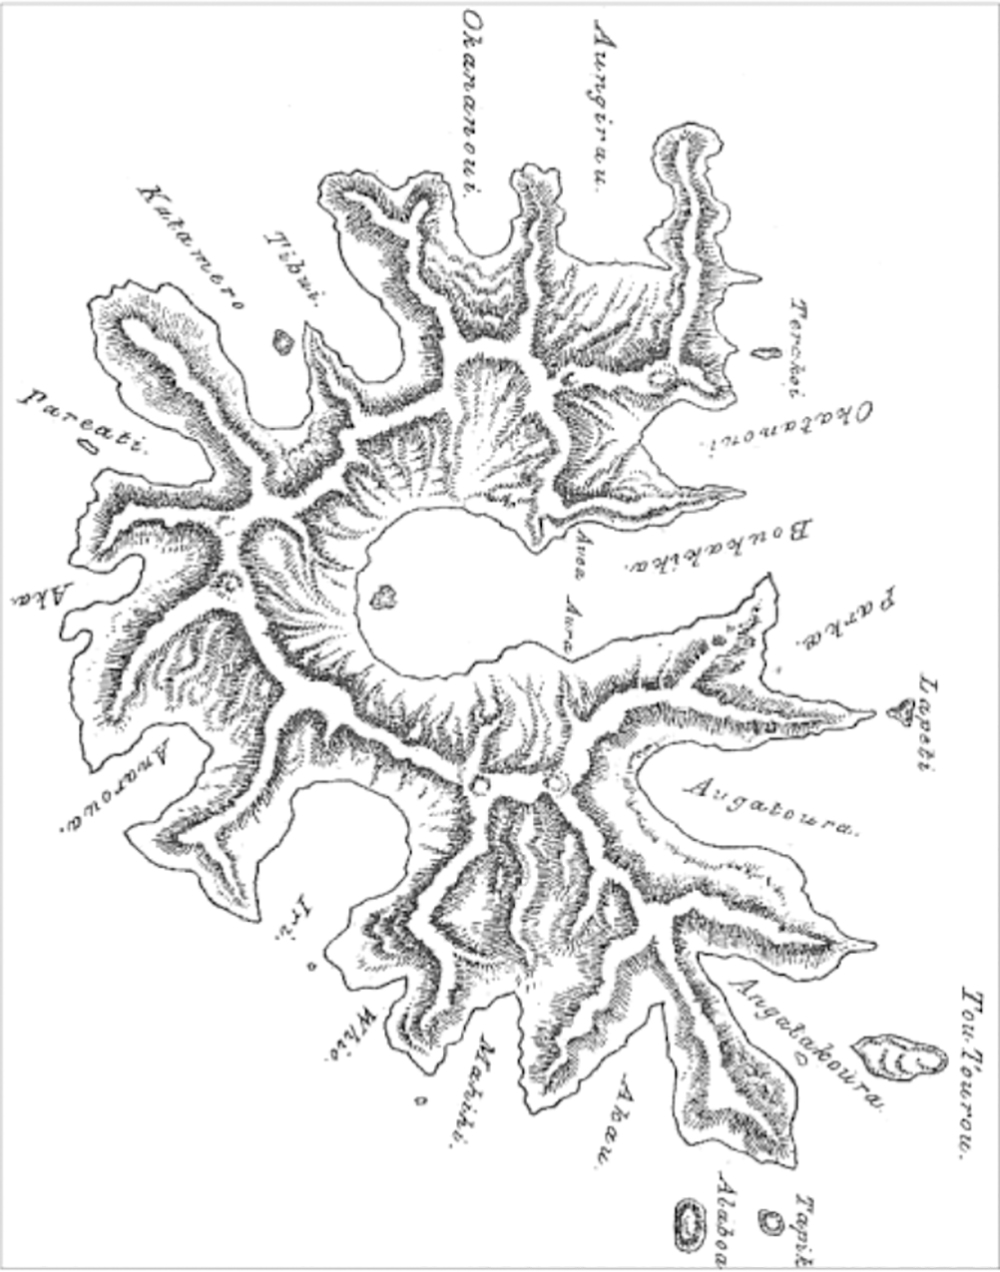 La carte de Rapa dressée par les Anglais en 1868, après leur reconnaissance de l’île pour ravitailler leurs bateaux.